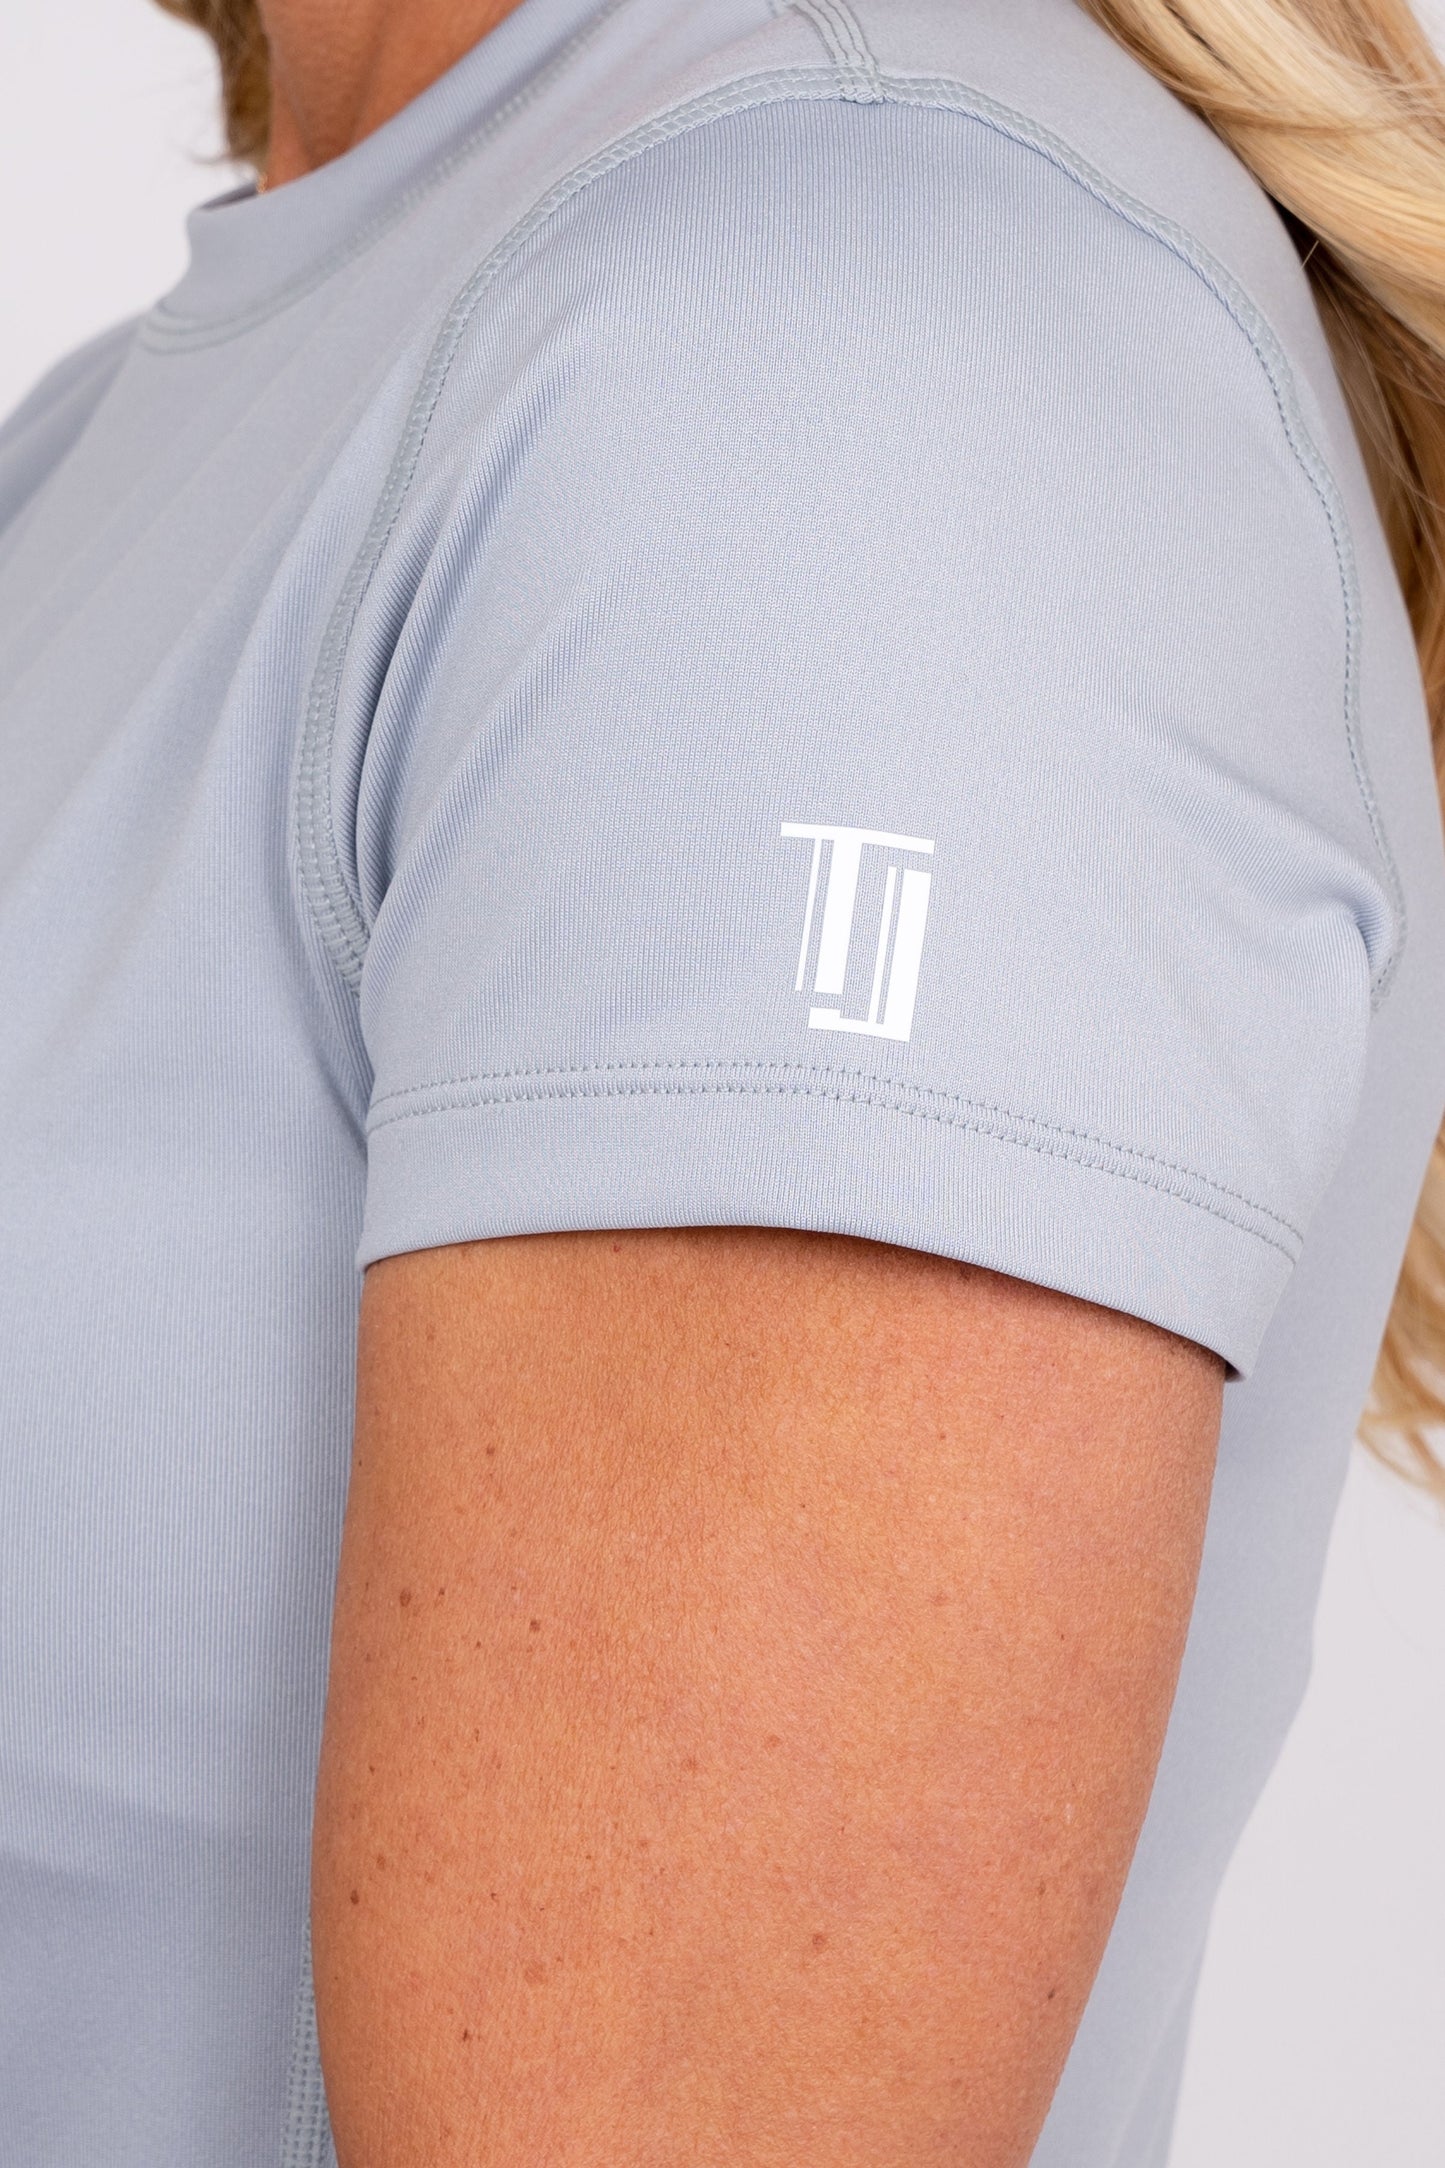 Jordan's Collarless Collection - Grey Women's Golf Shirt Taylor Jordan Apparel 